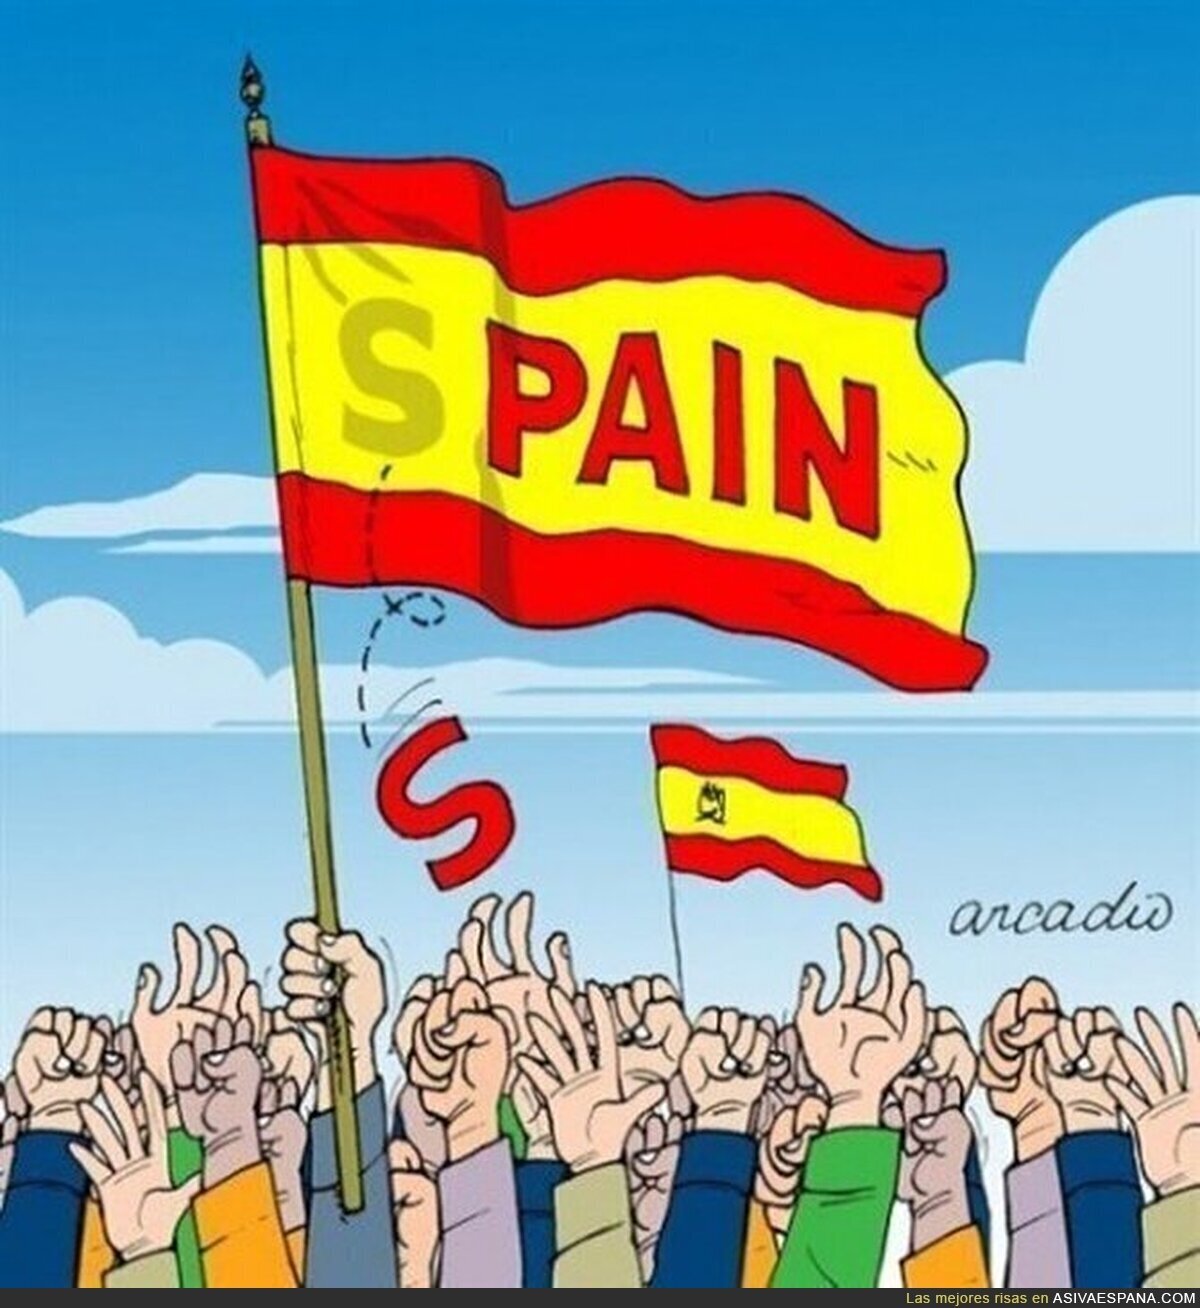 SPAIN - Estamos jodidos